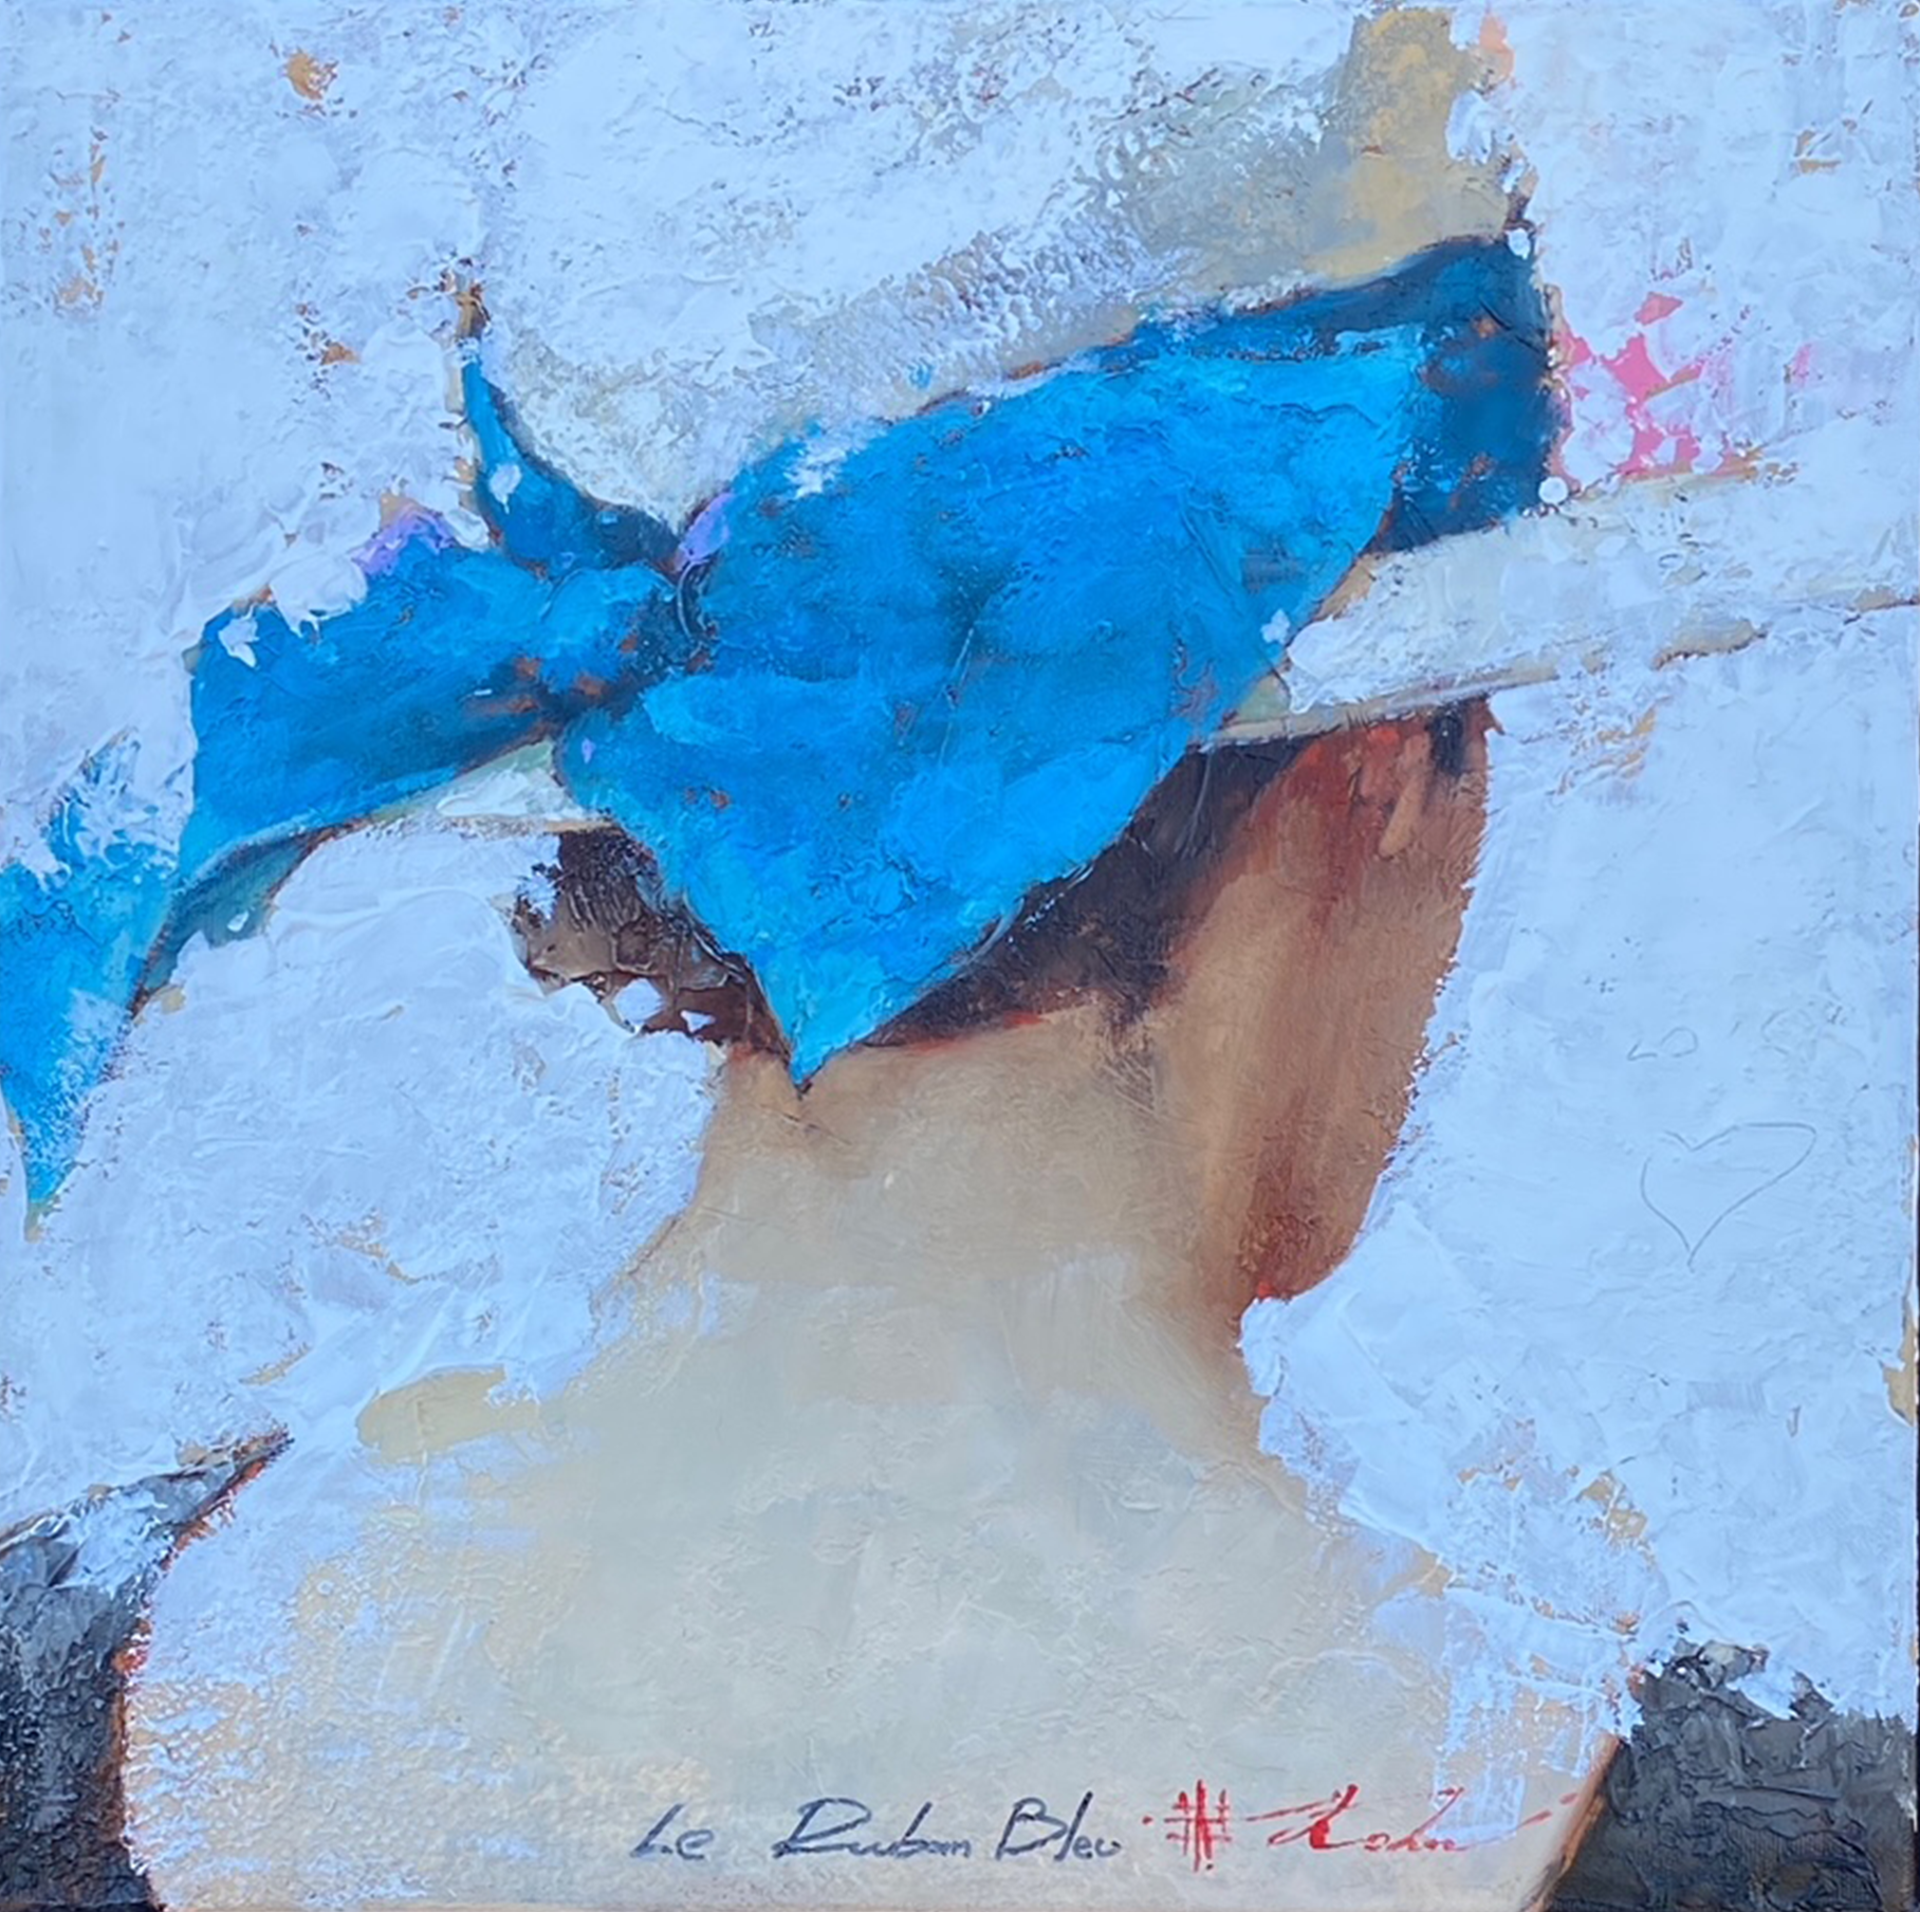 Le Ruban Bleu by Andre Kohn